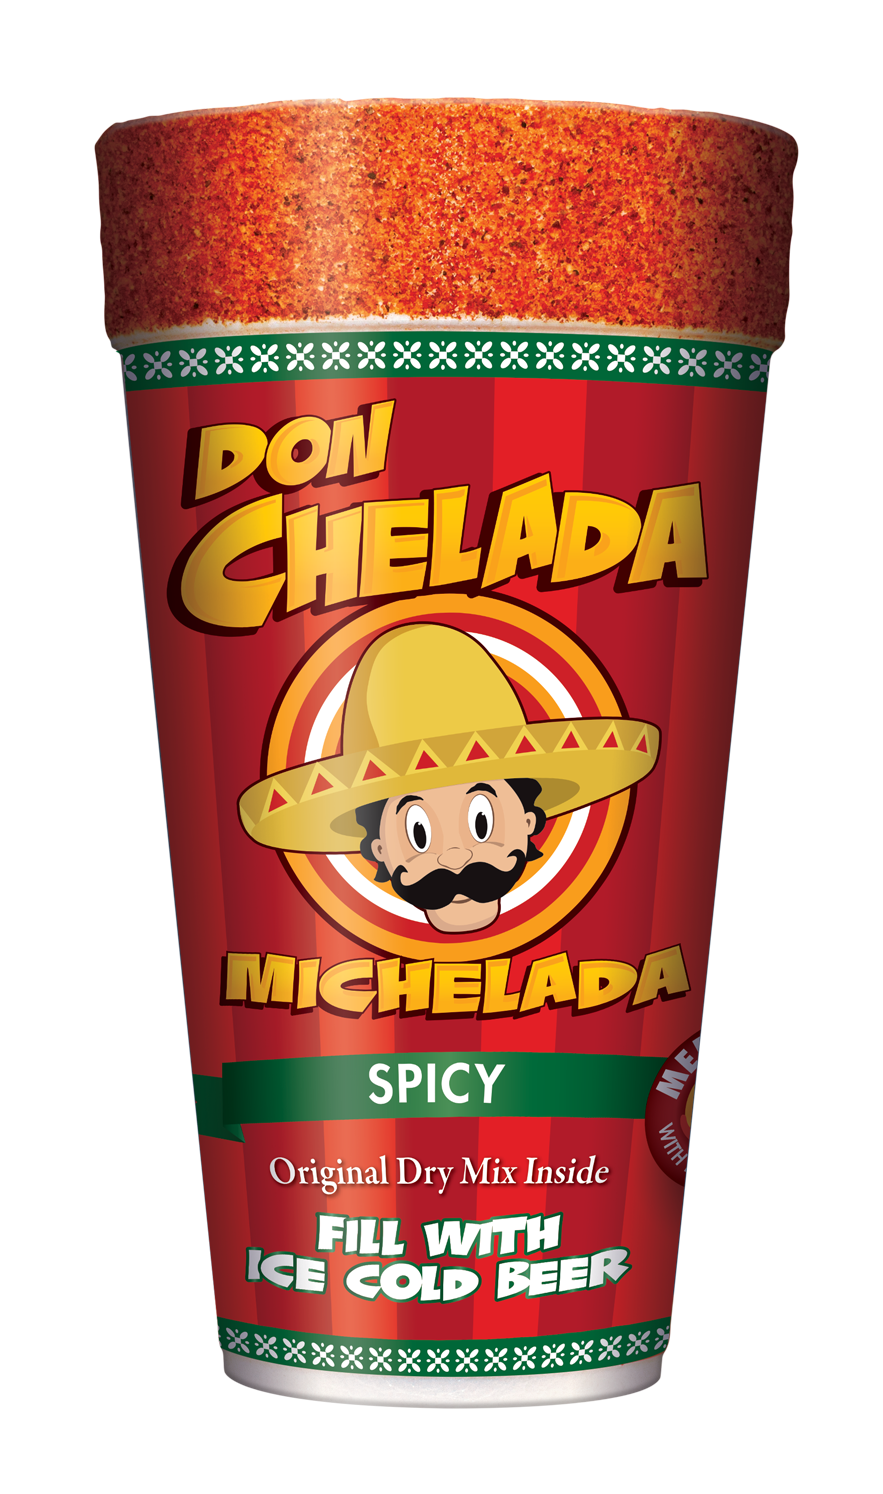 Don Chelada Michelada Cup - Spicy - Lucky's Liquor